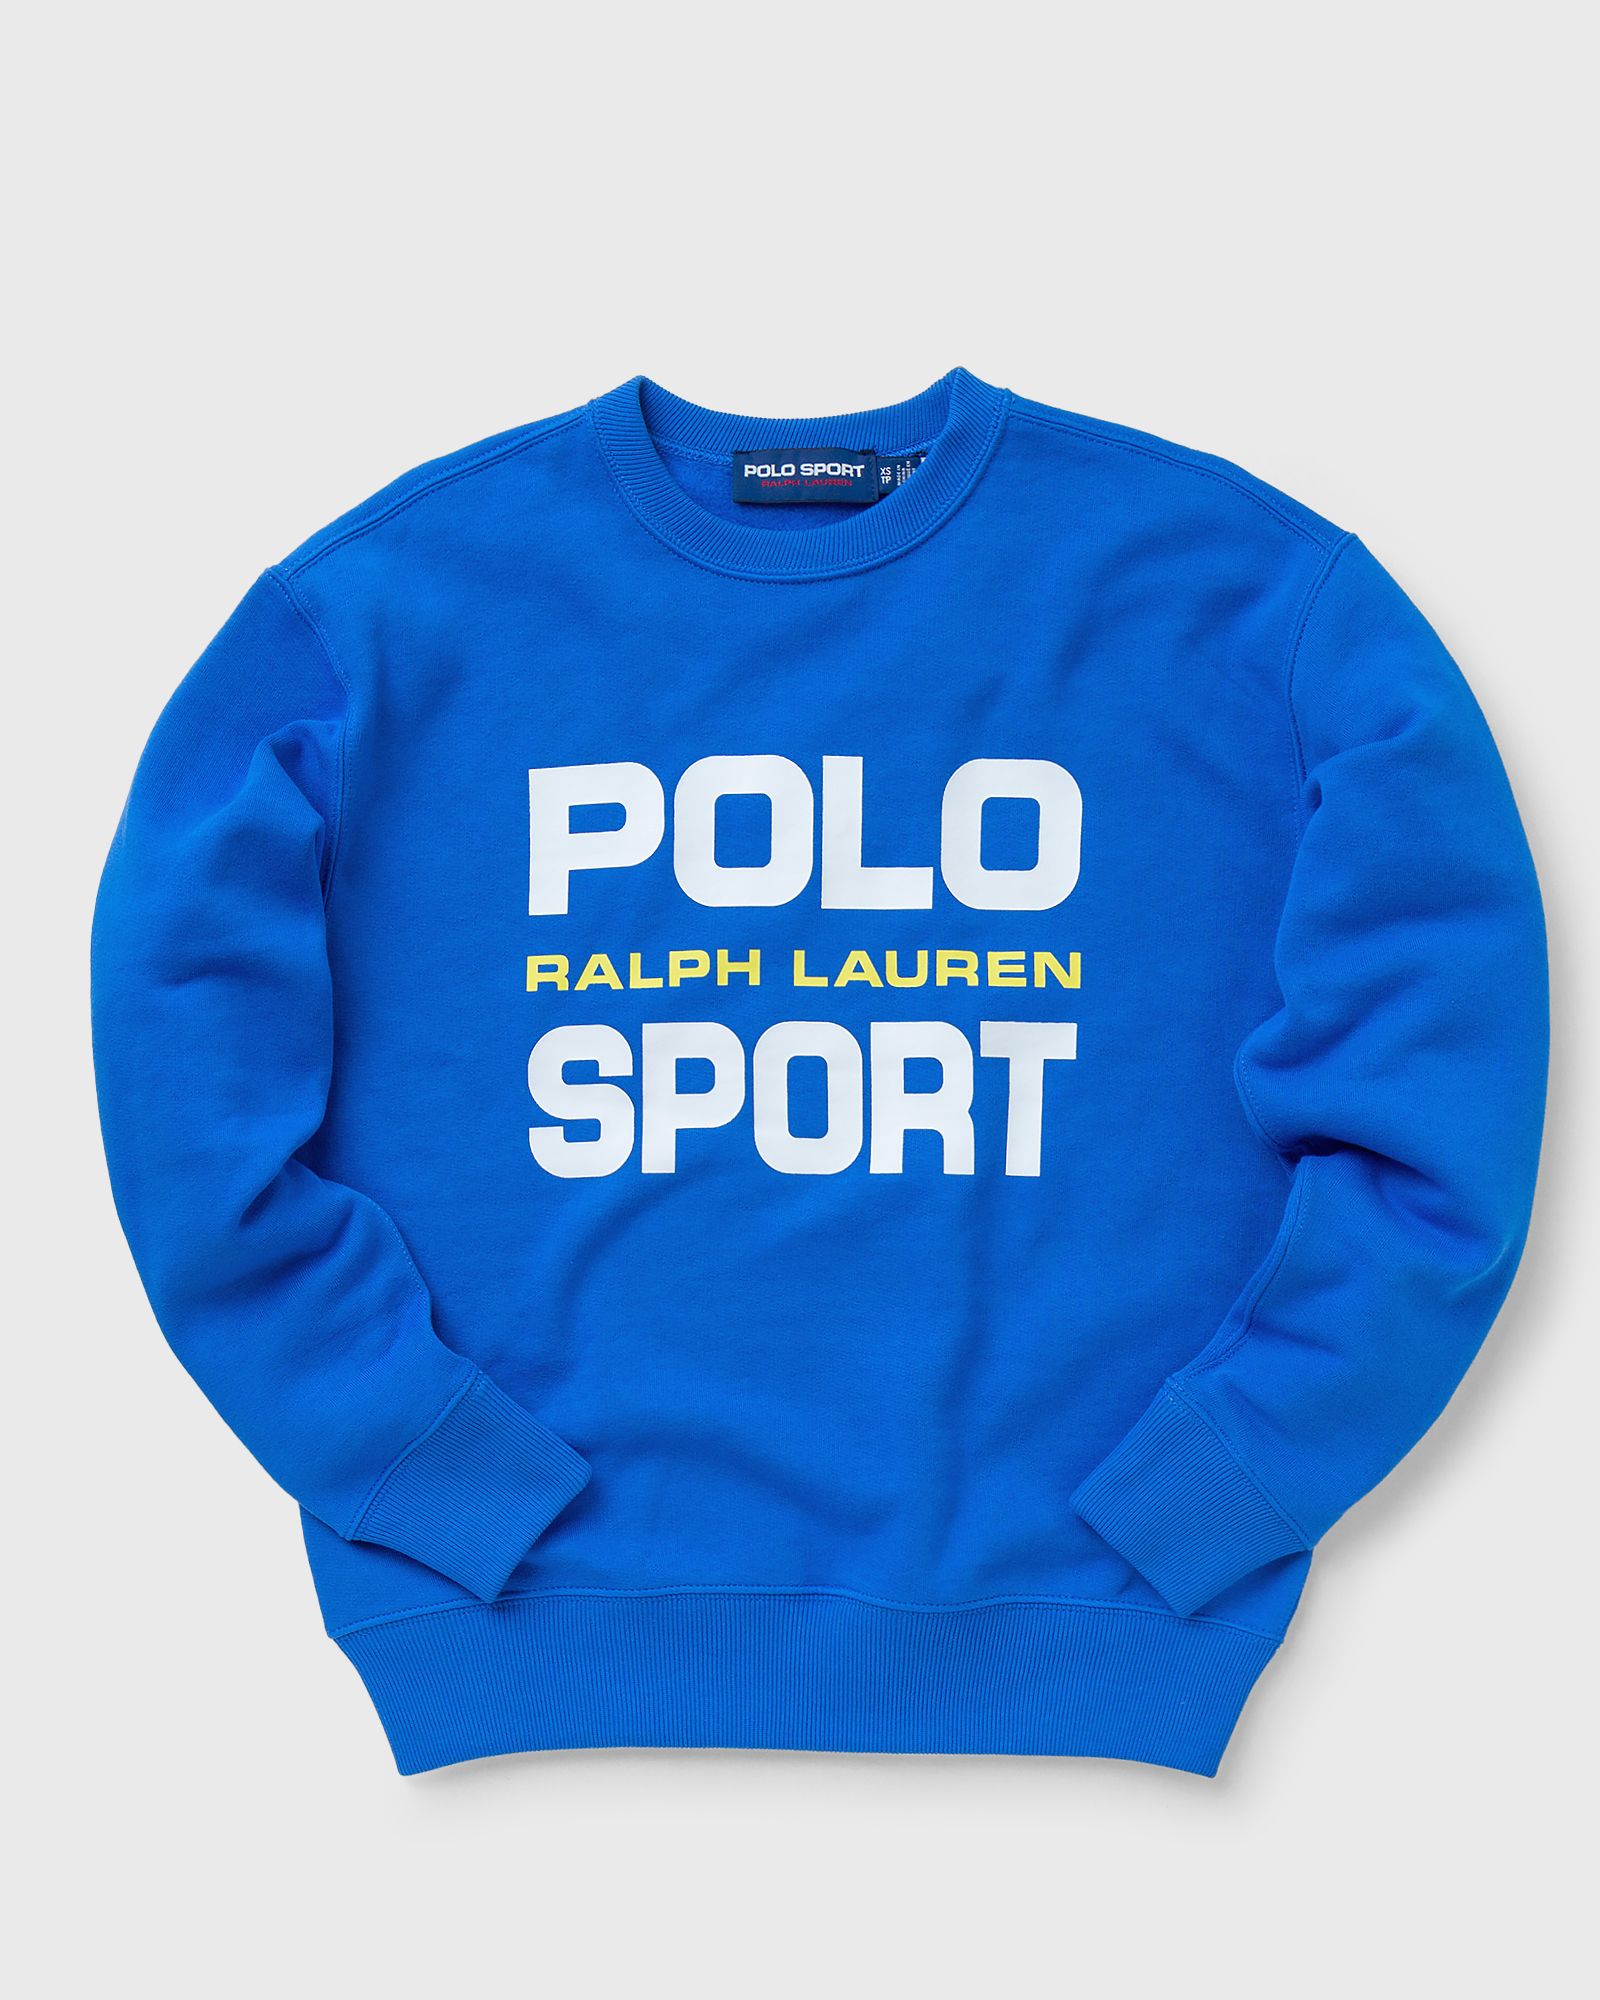 Polo Ralph Lauren - wmns longsleeve women sweatshirts blue in größe:s